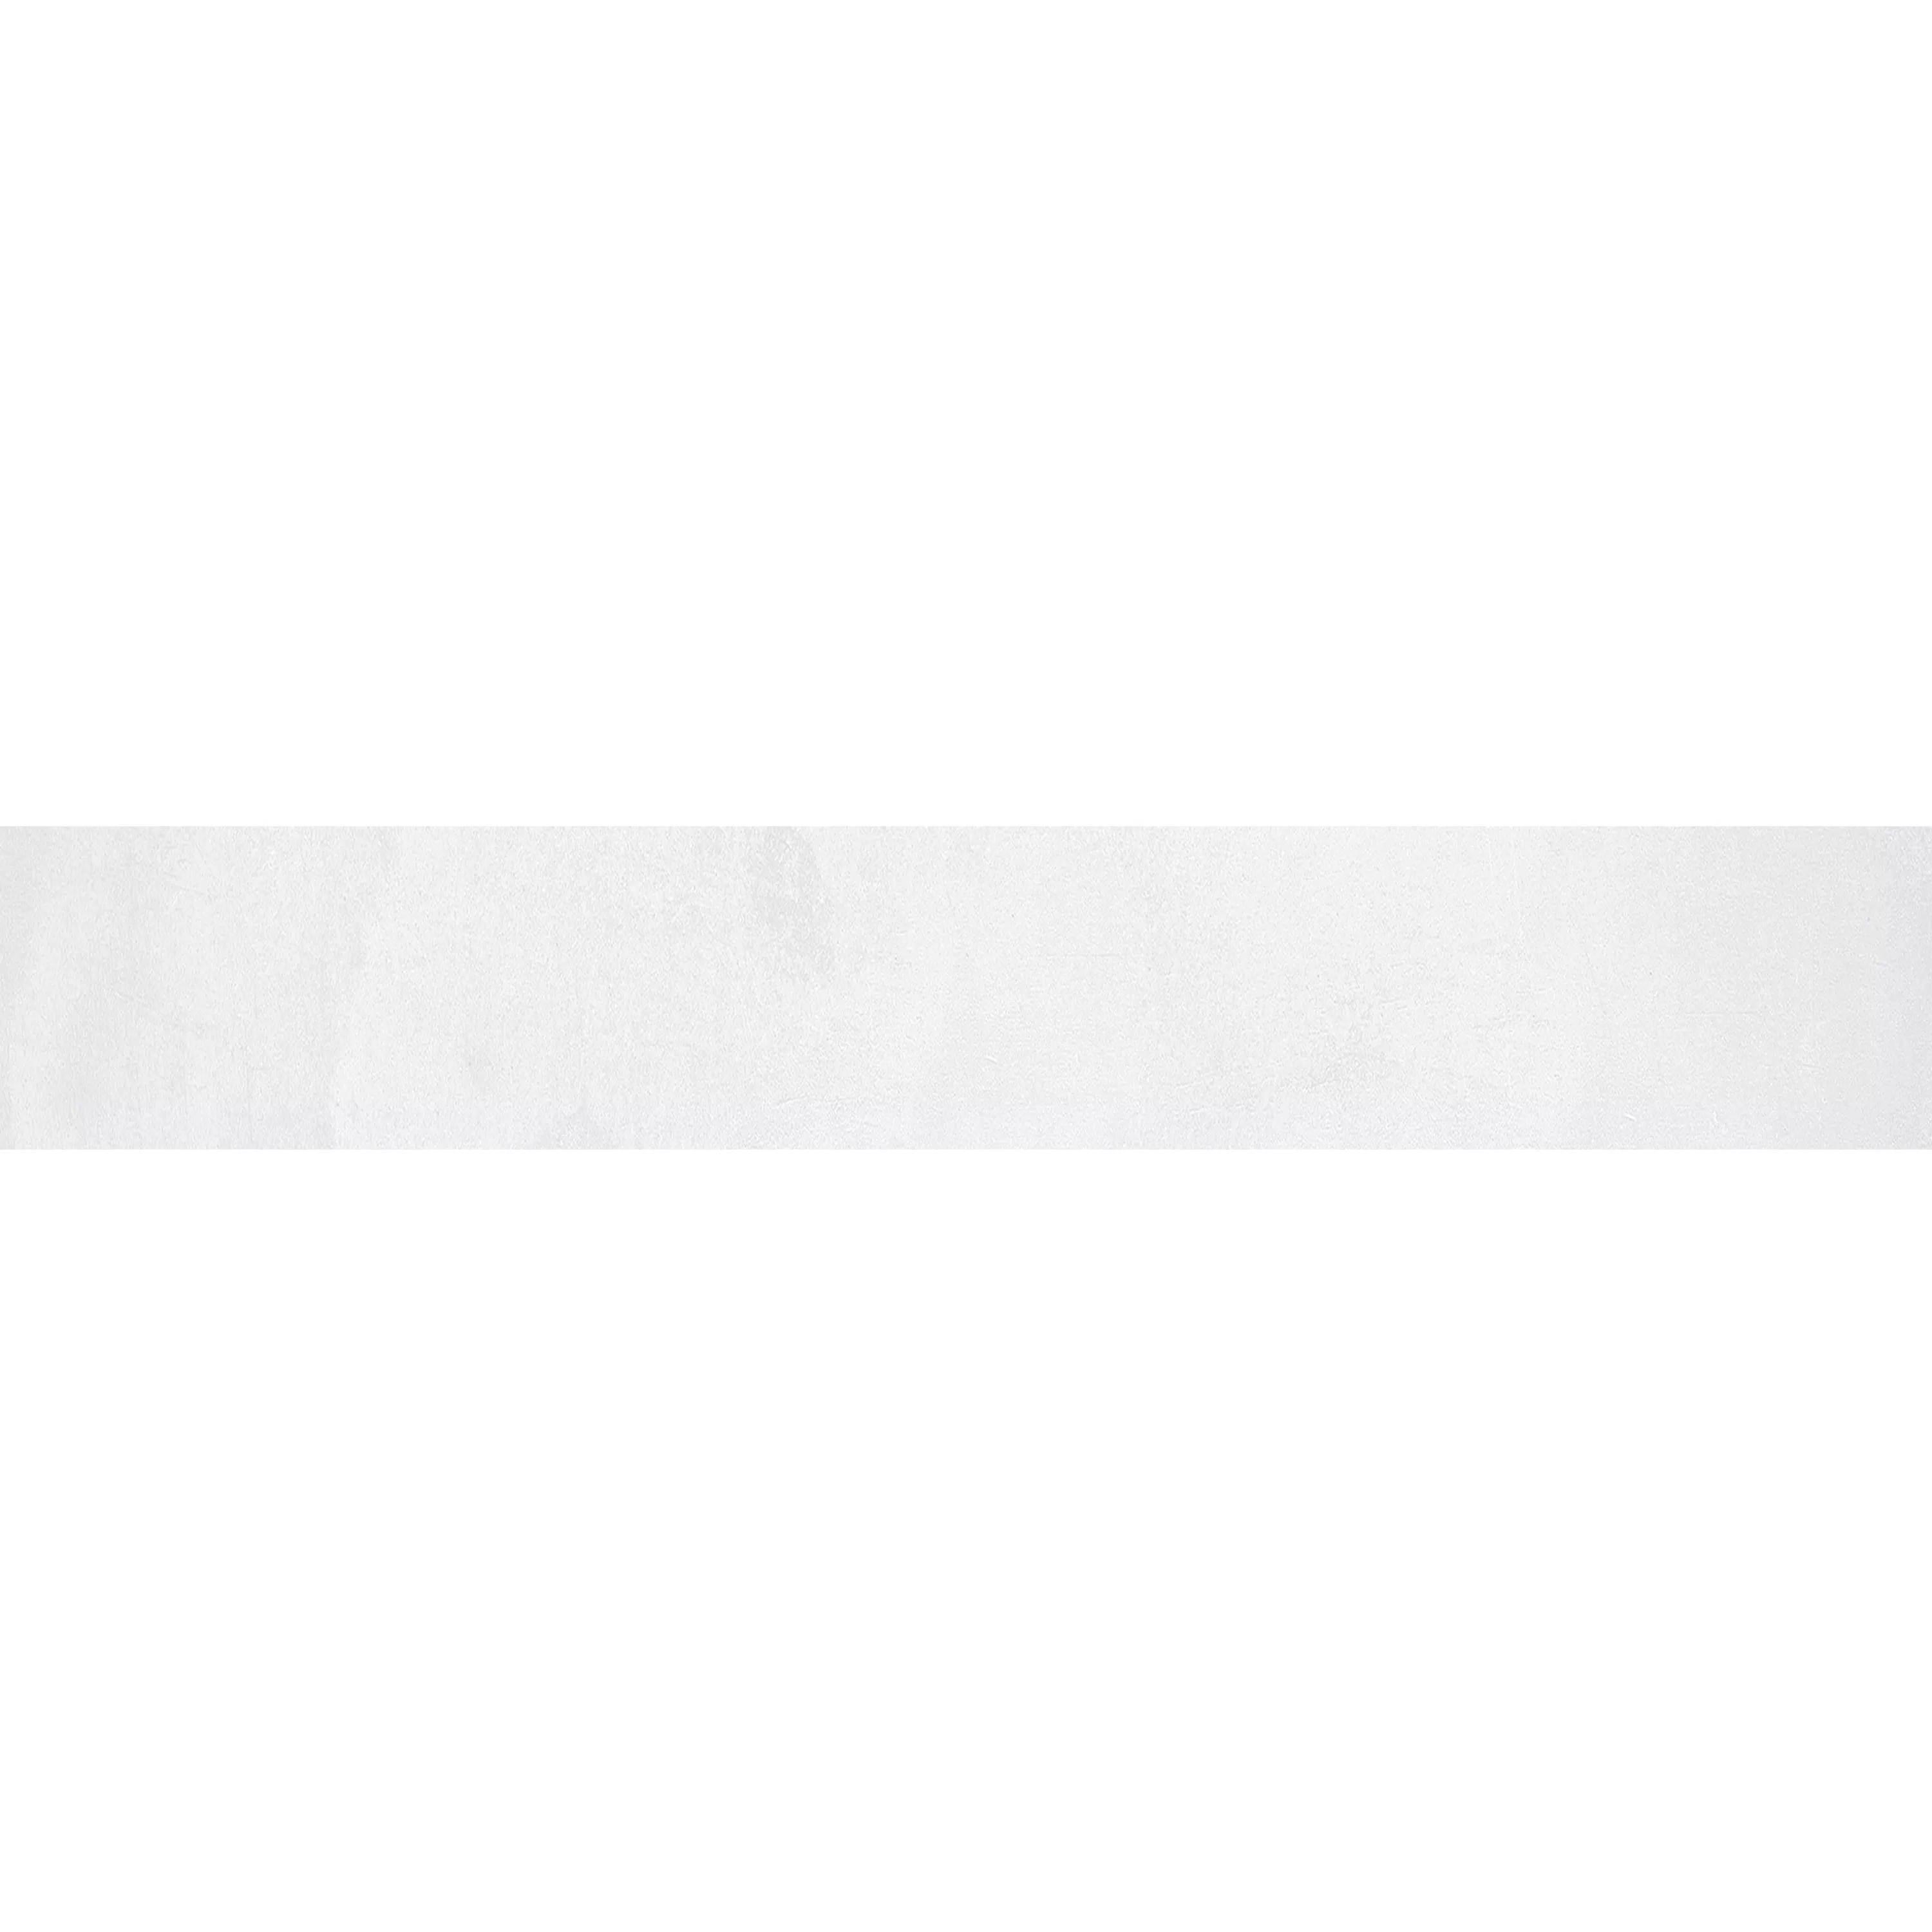 Σοβατεπί Brazil Ασπρο 6,5x60cm